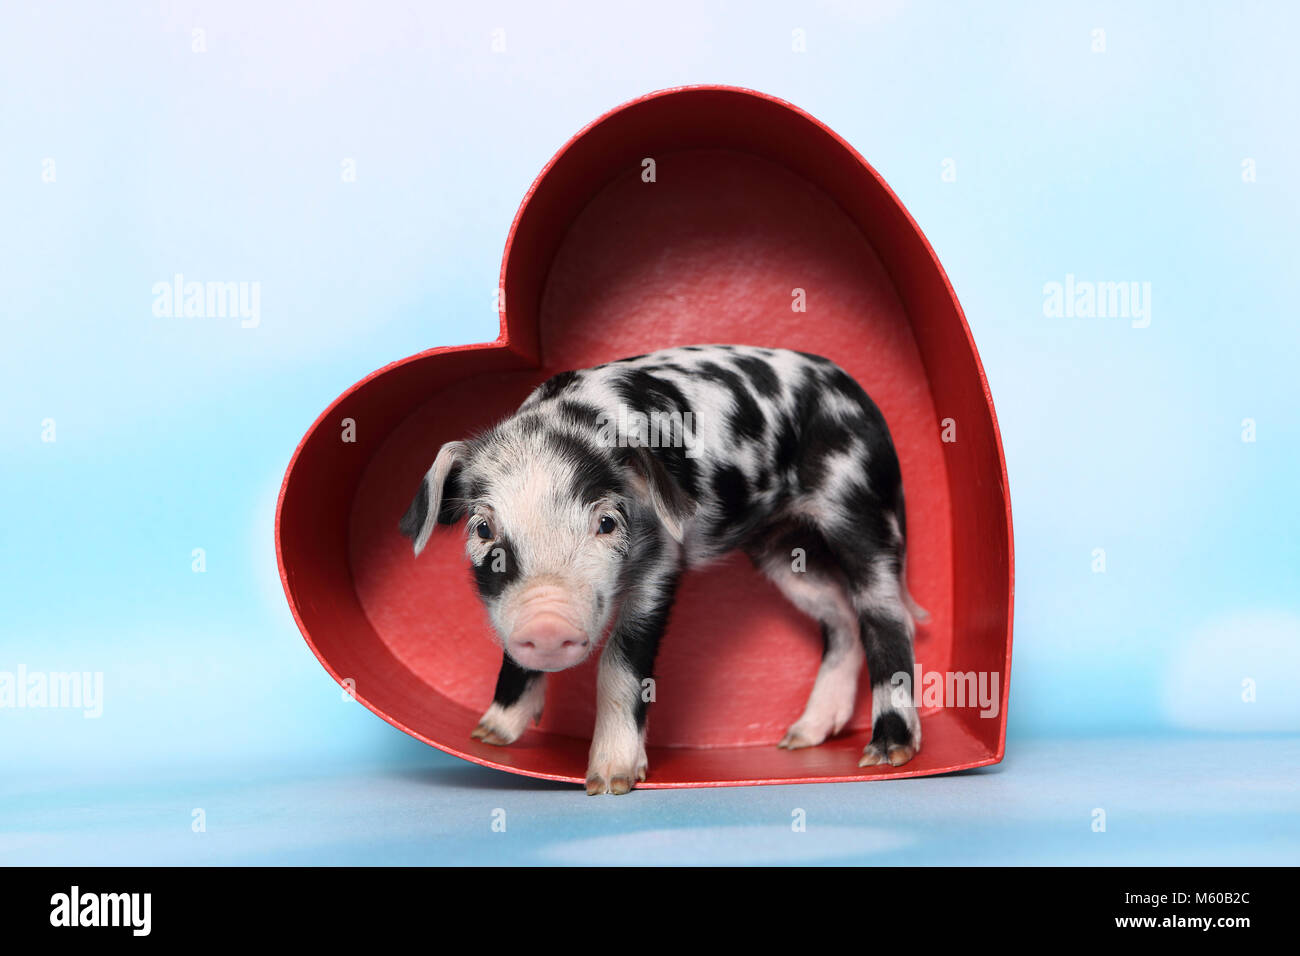 Hausschwein, Turopolje x?. Ferkel (1 Woche alt) in ein rotes Herz aus Karton. Studio Bild gegen einen hellblauen Hintergrund gesehen. Deutschland Stockfoto